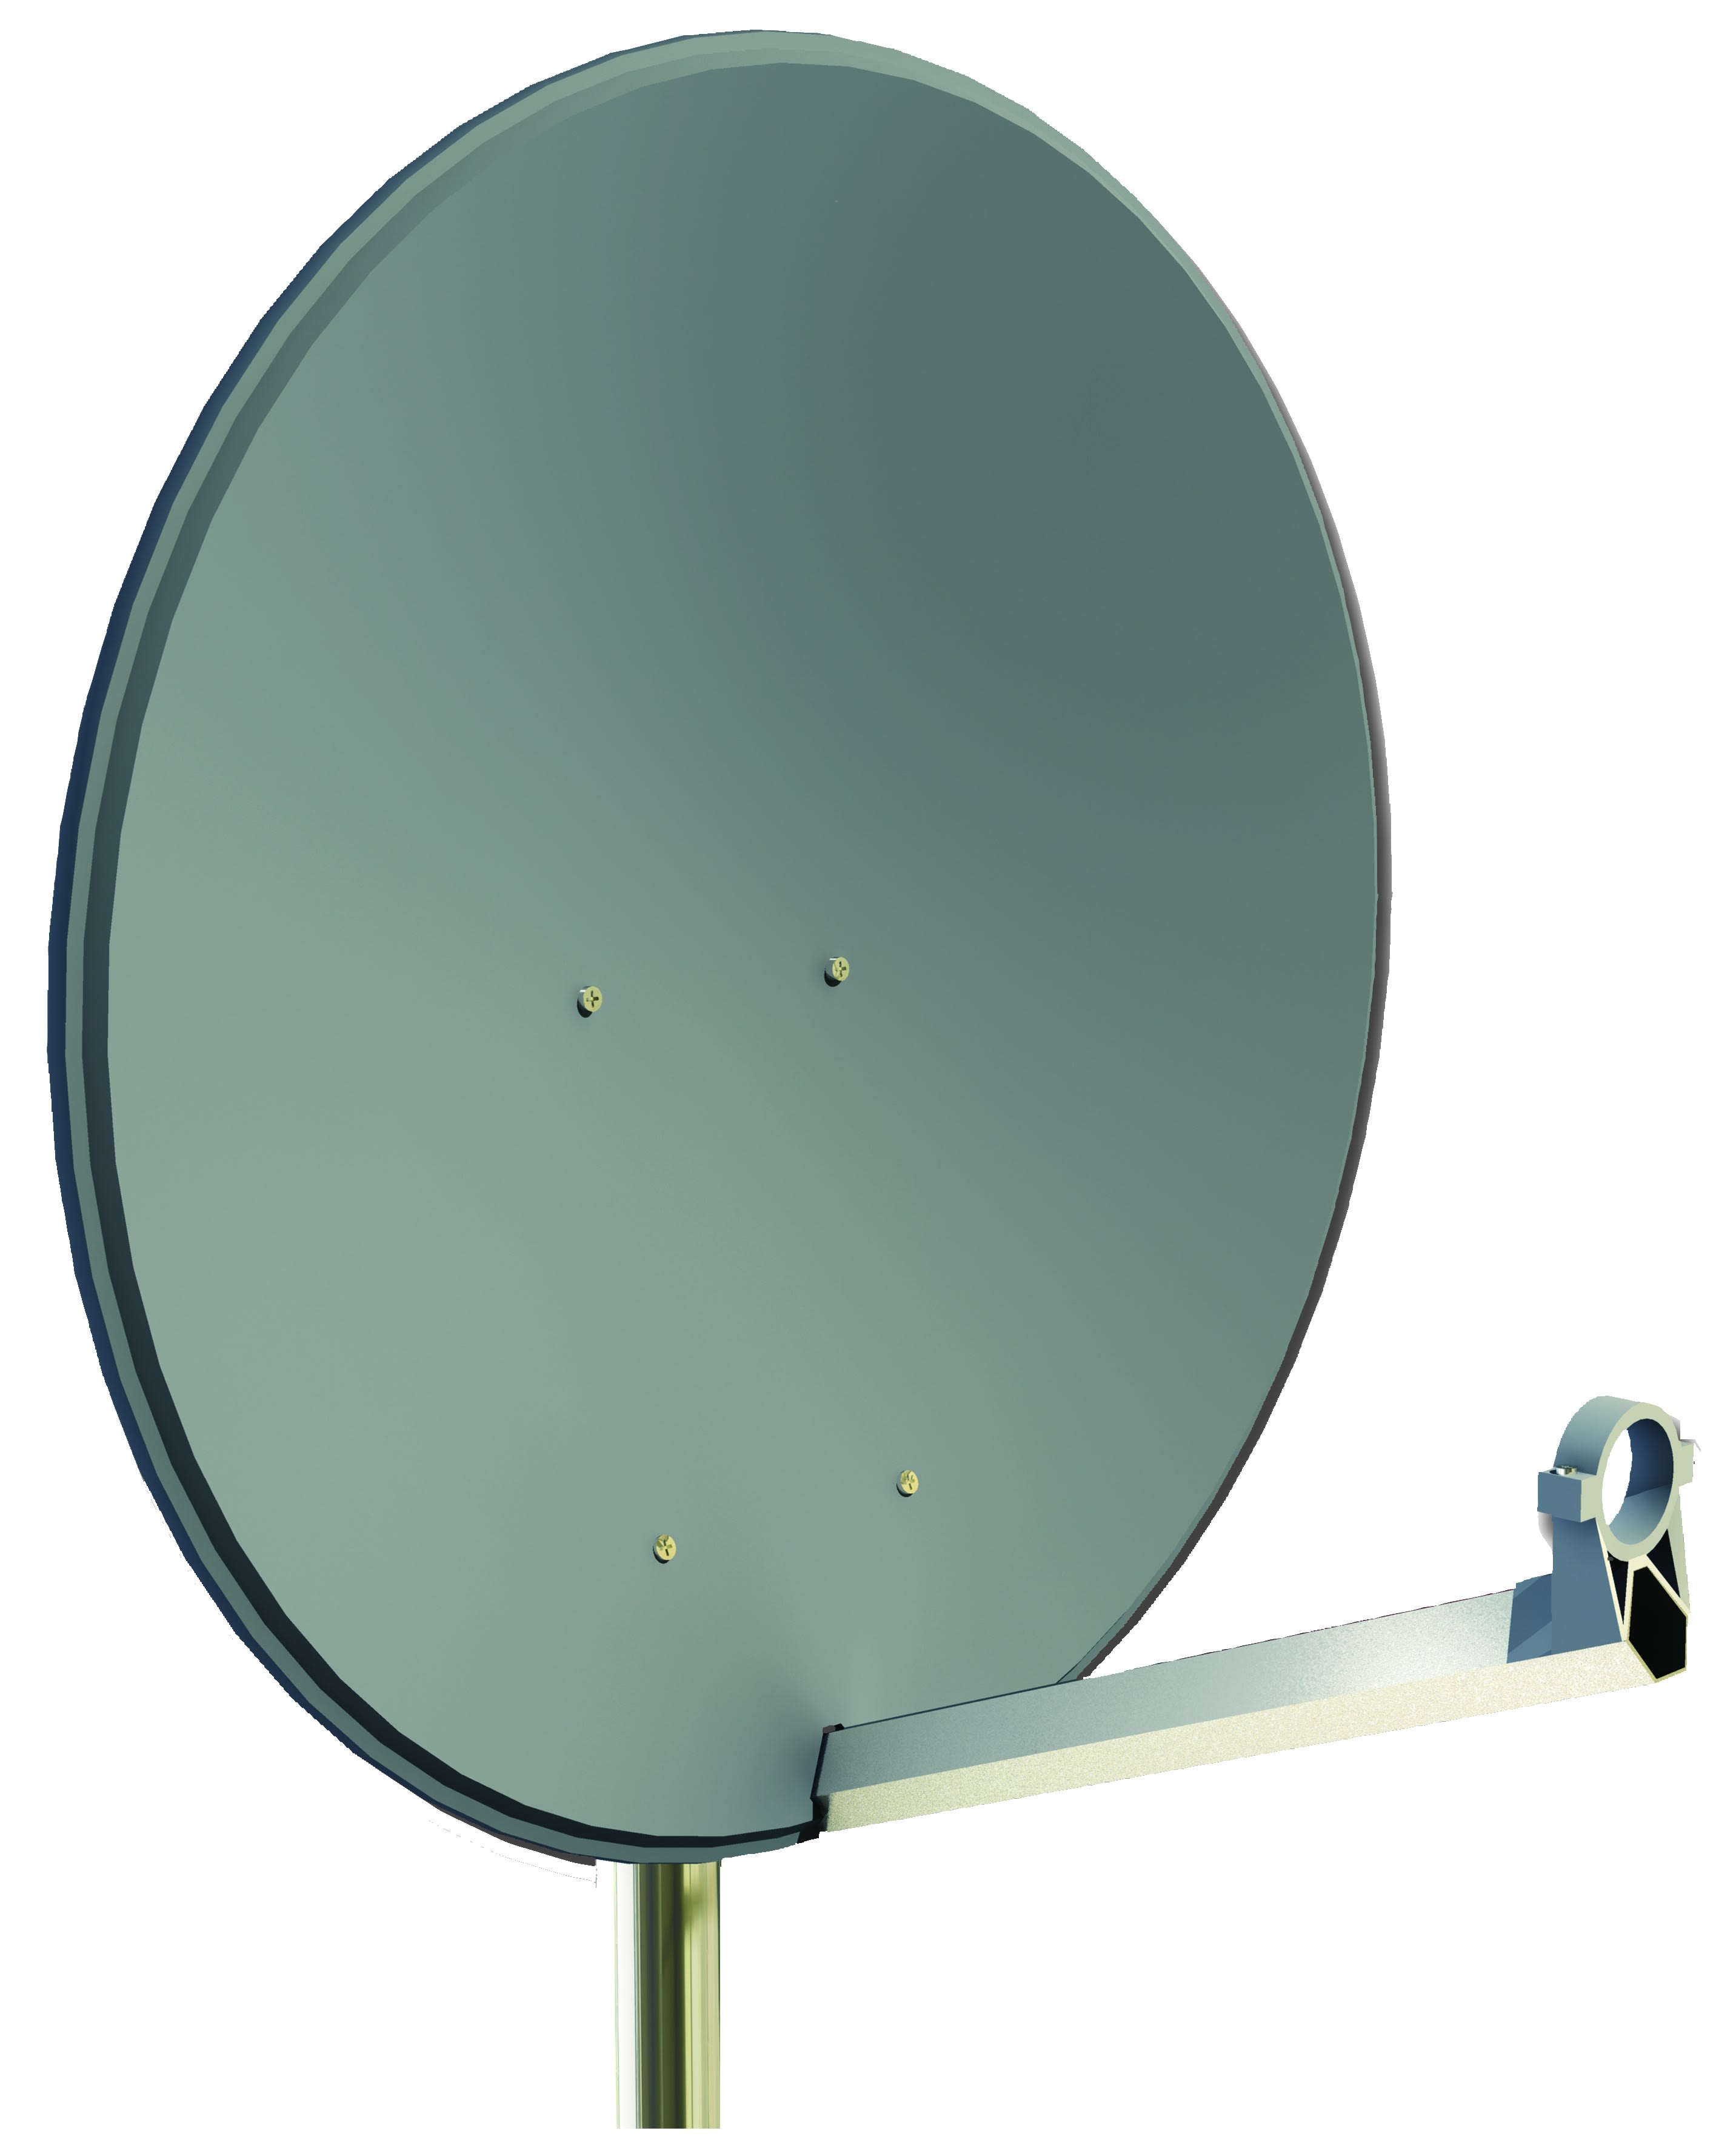 CAE Data - Antenne parabolique pour la réception TV par satellite